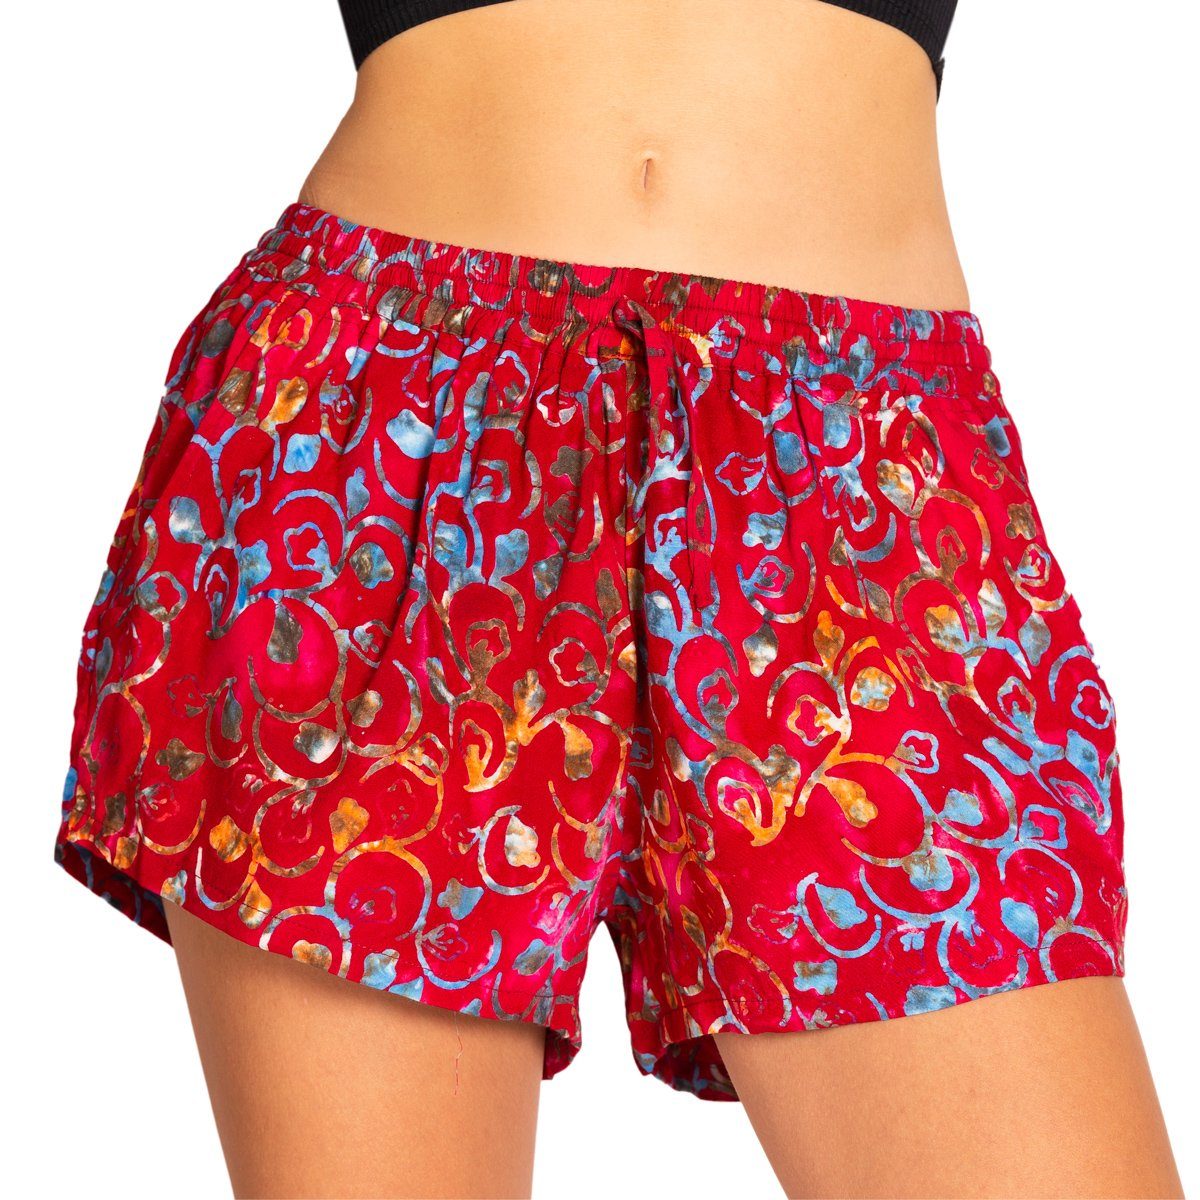 PANASIAM Strandshorts Damen Shorts Wachsbatik für Strand Yoga oder Meditation farbecht und angenehm zu Tragen Relaxshorts Damenshorts kurze Sporthose B507 red-floral